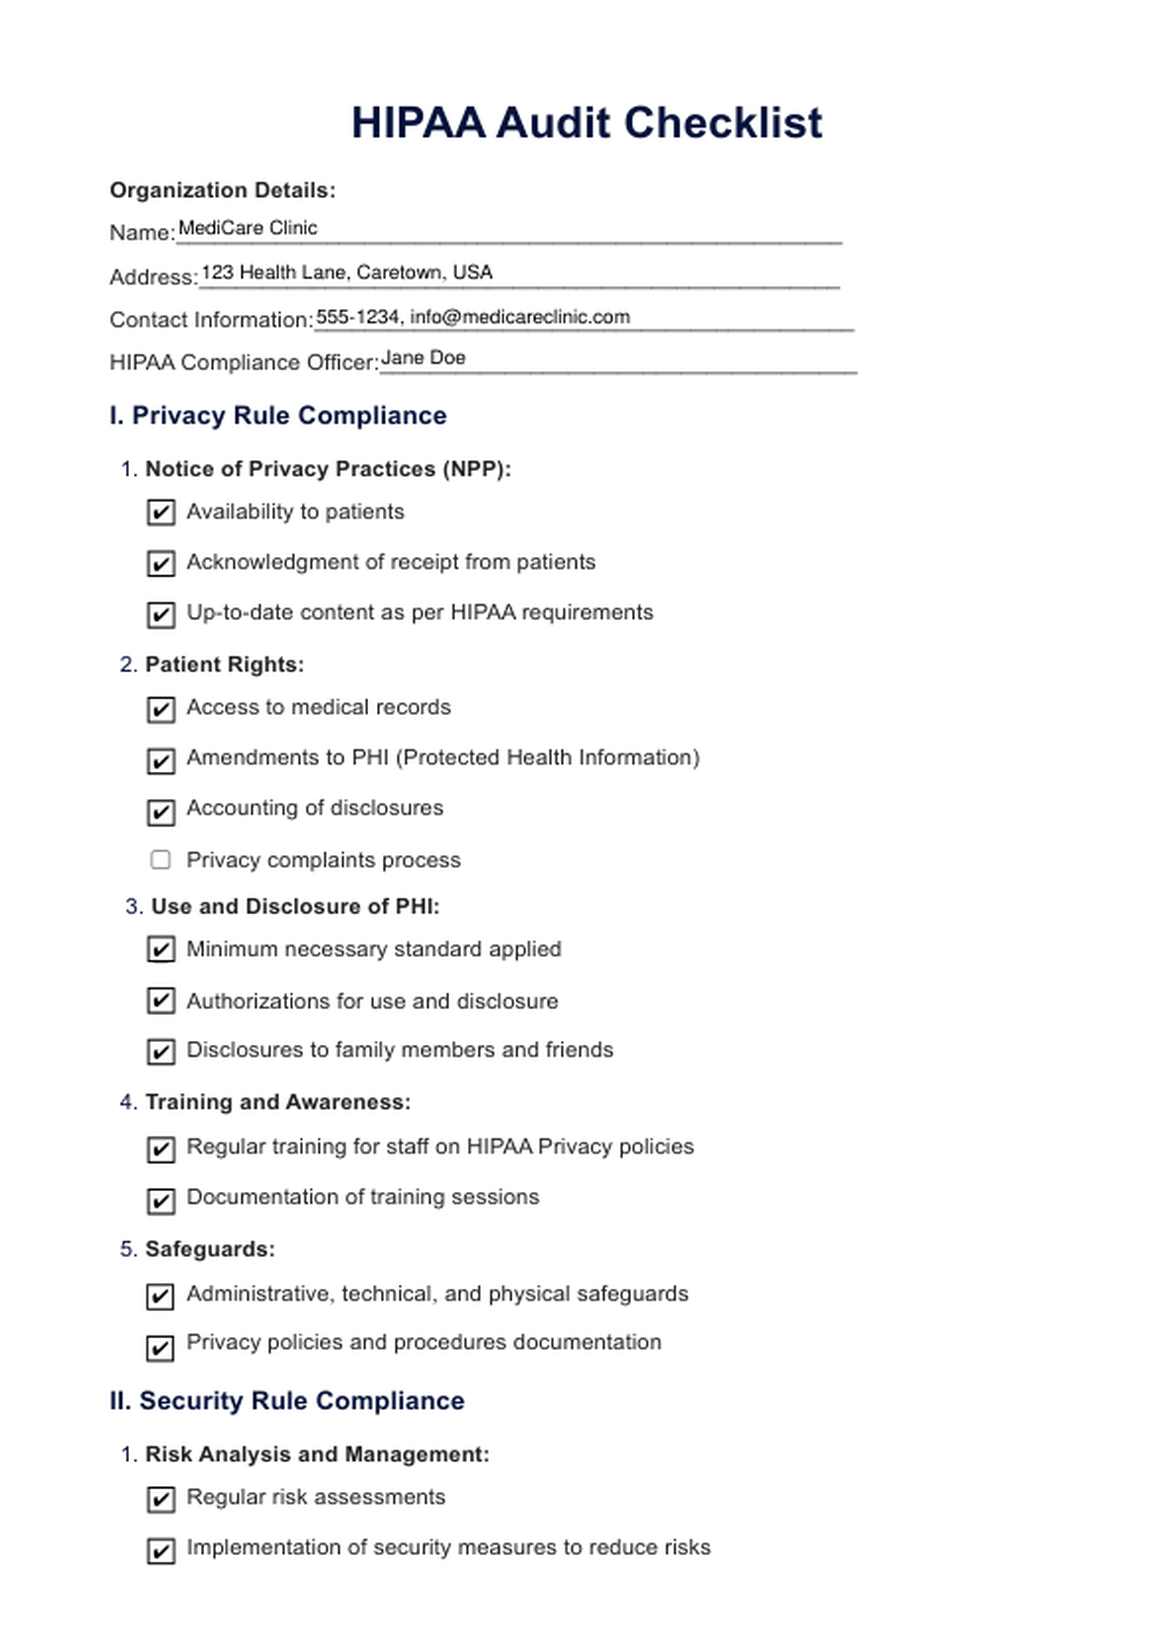 HIPAA Audit PDF Example